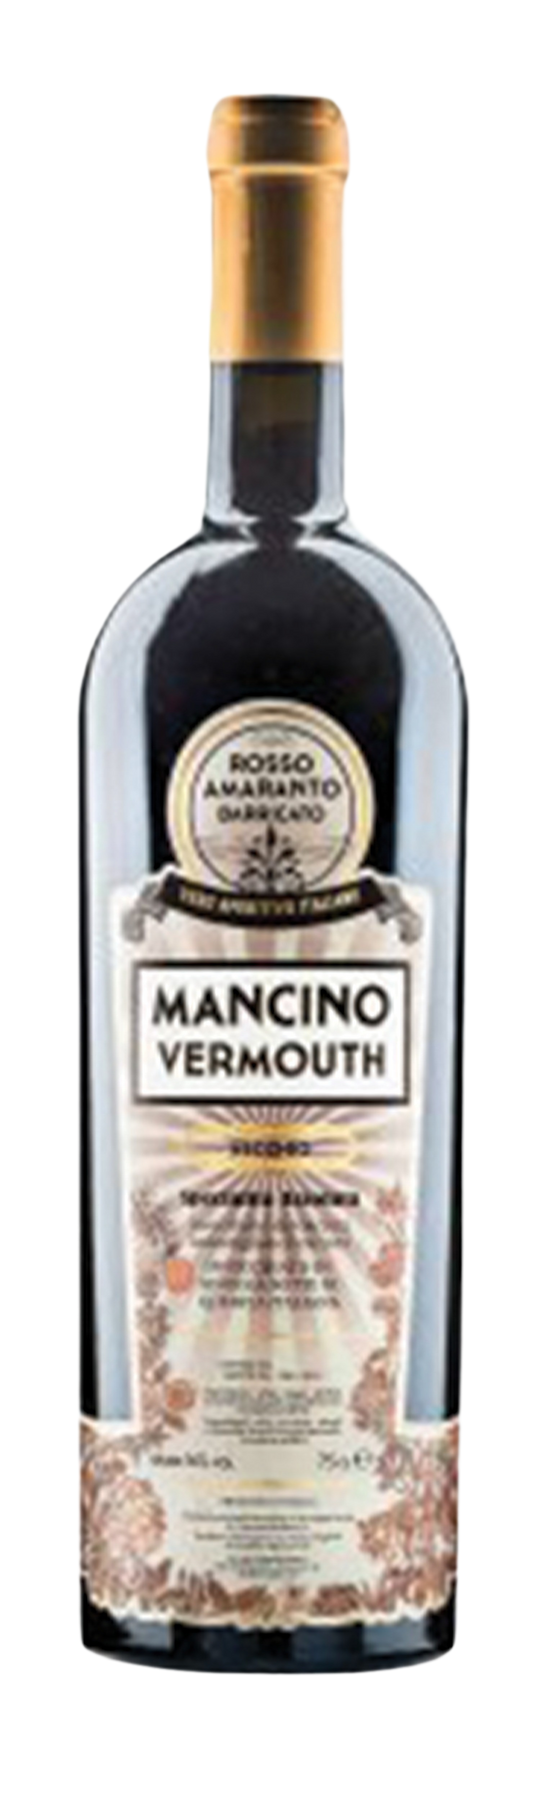 Mancino Vechio 16% 75cl Vermouth di Torino